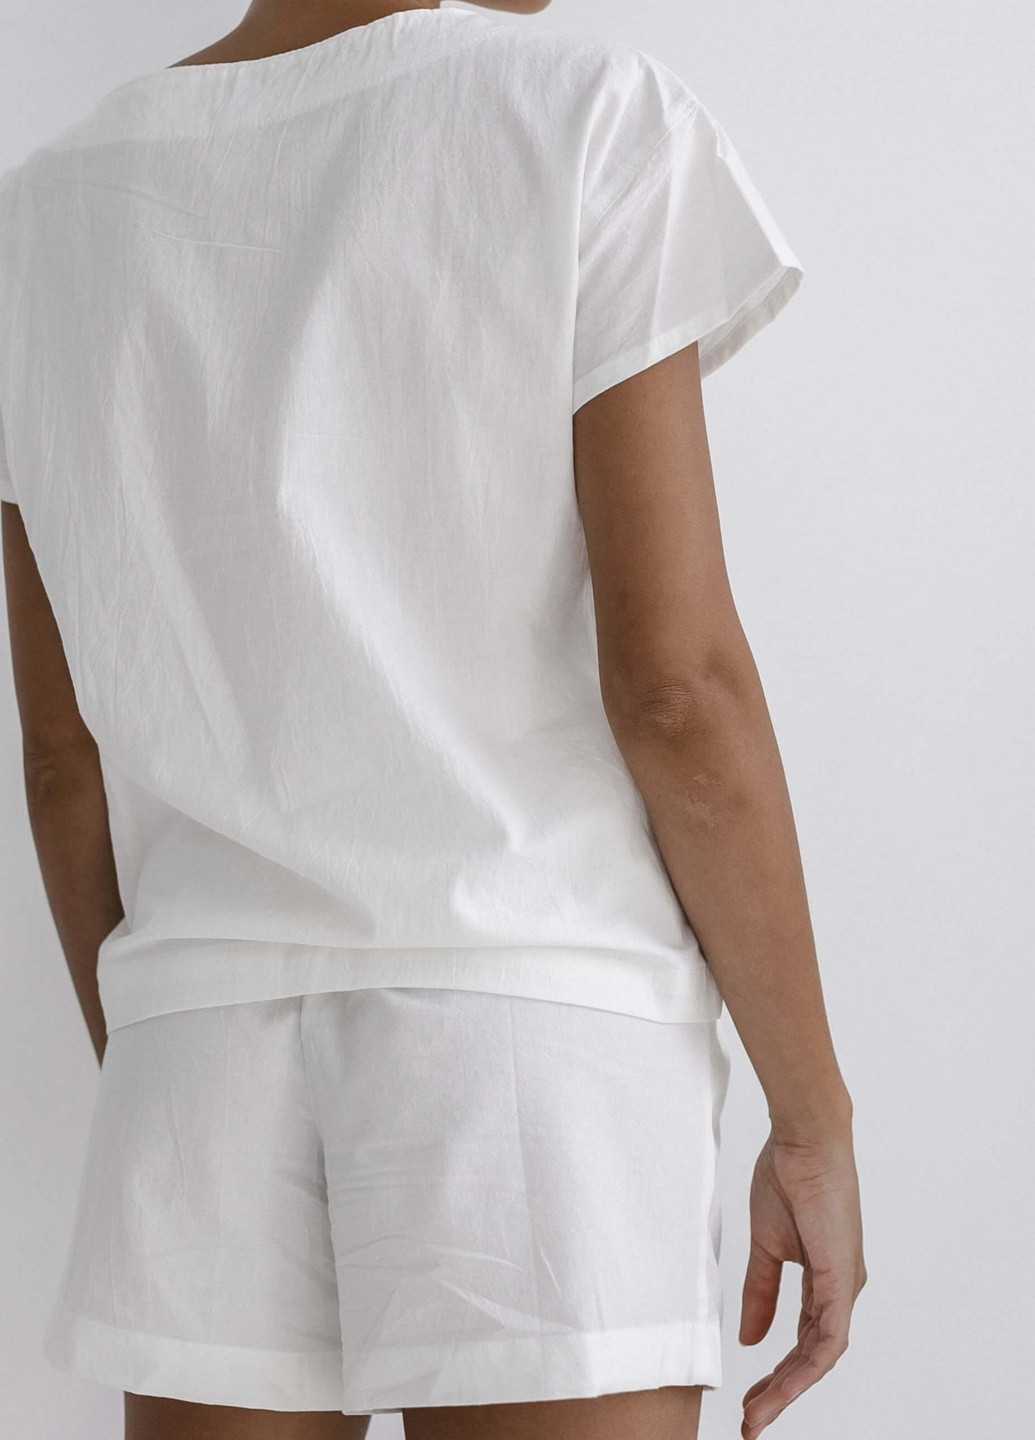 Молочная всесезон пижама женская с шортами creme (xl) футболка + шорты Leglo